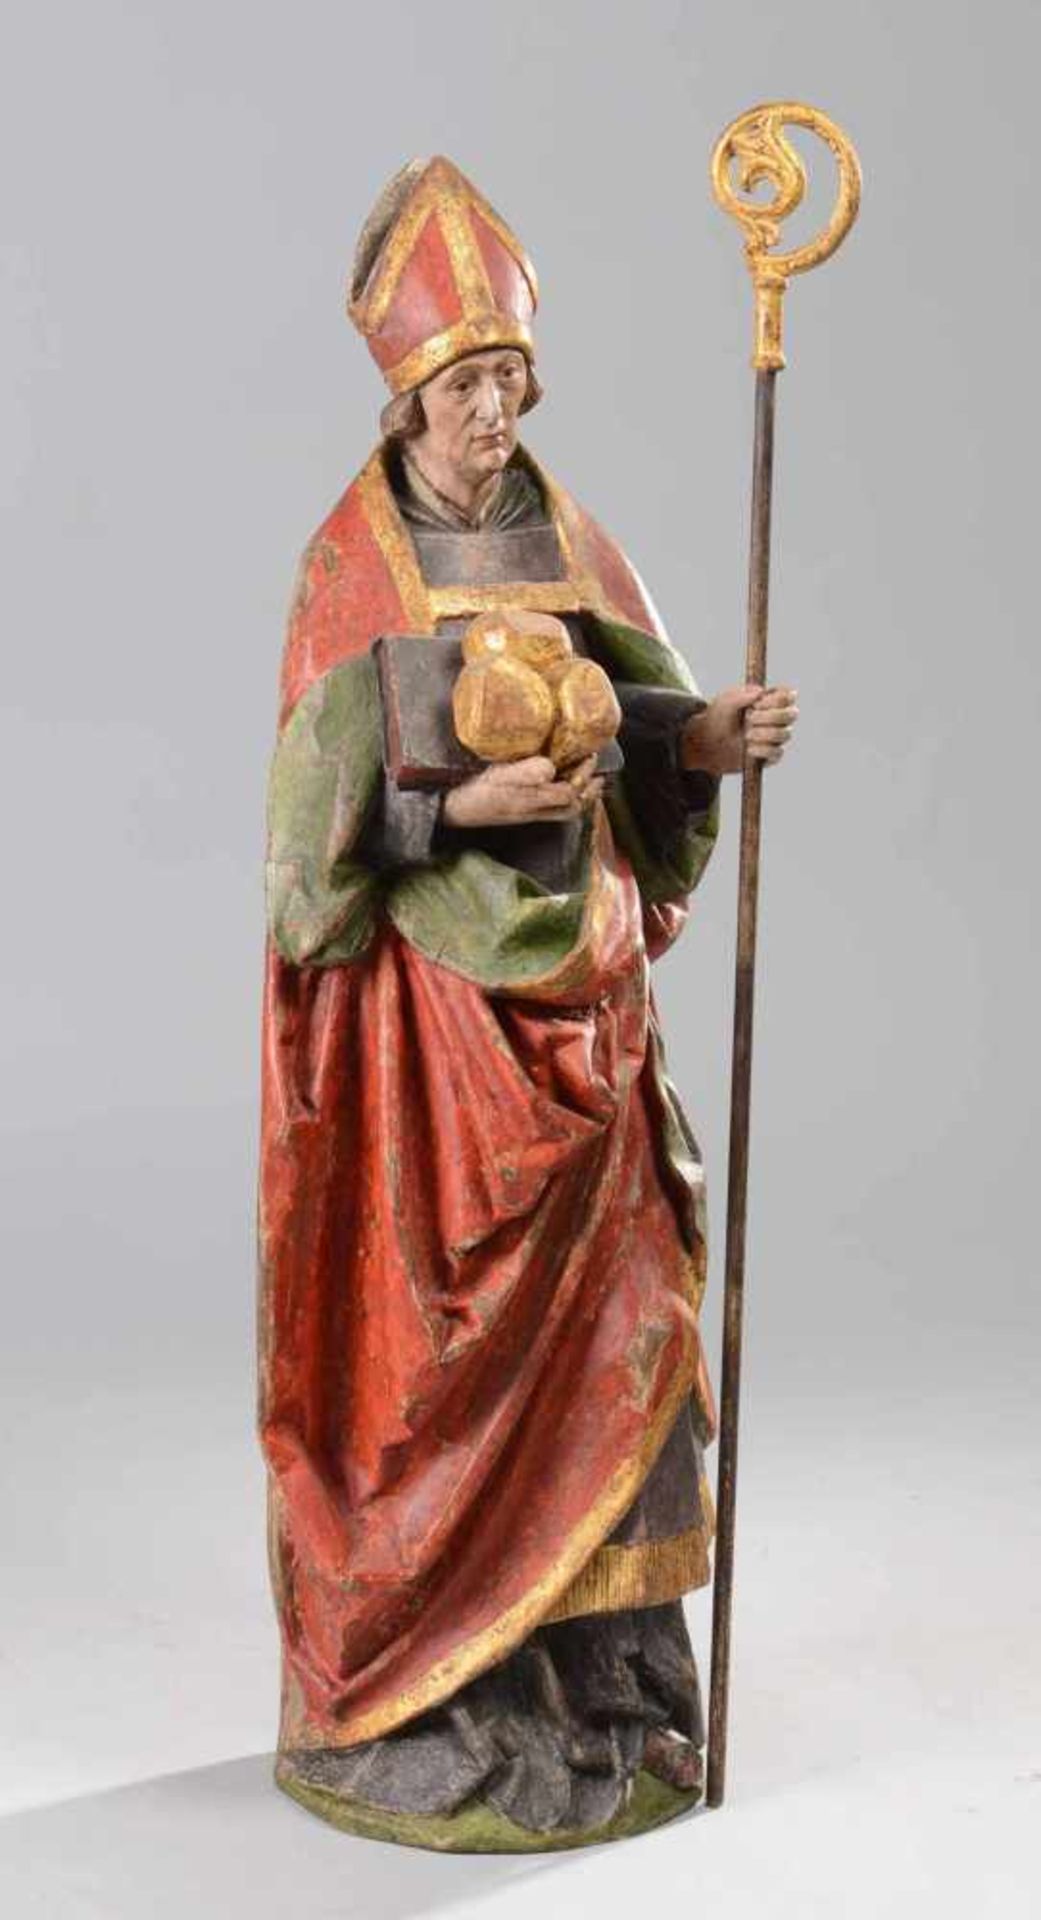 Heiliger Nikolaus Holz dreiviertelrund geschnitzt, rückseitig abgeflacht und gehöhlt, mehrfarbig - Bild 2 aus 4